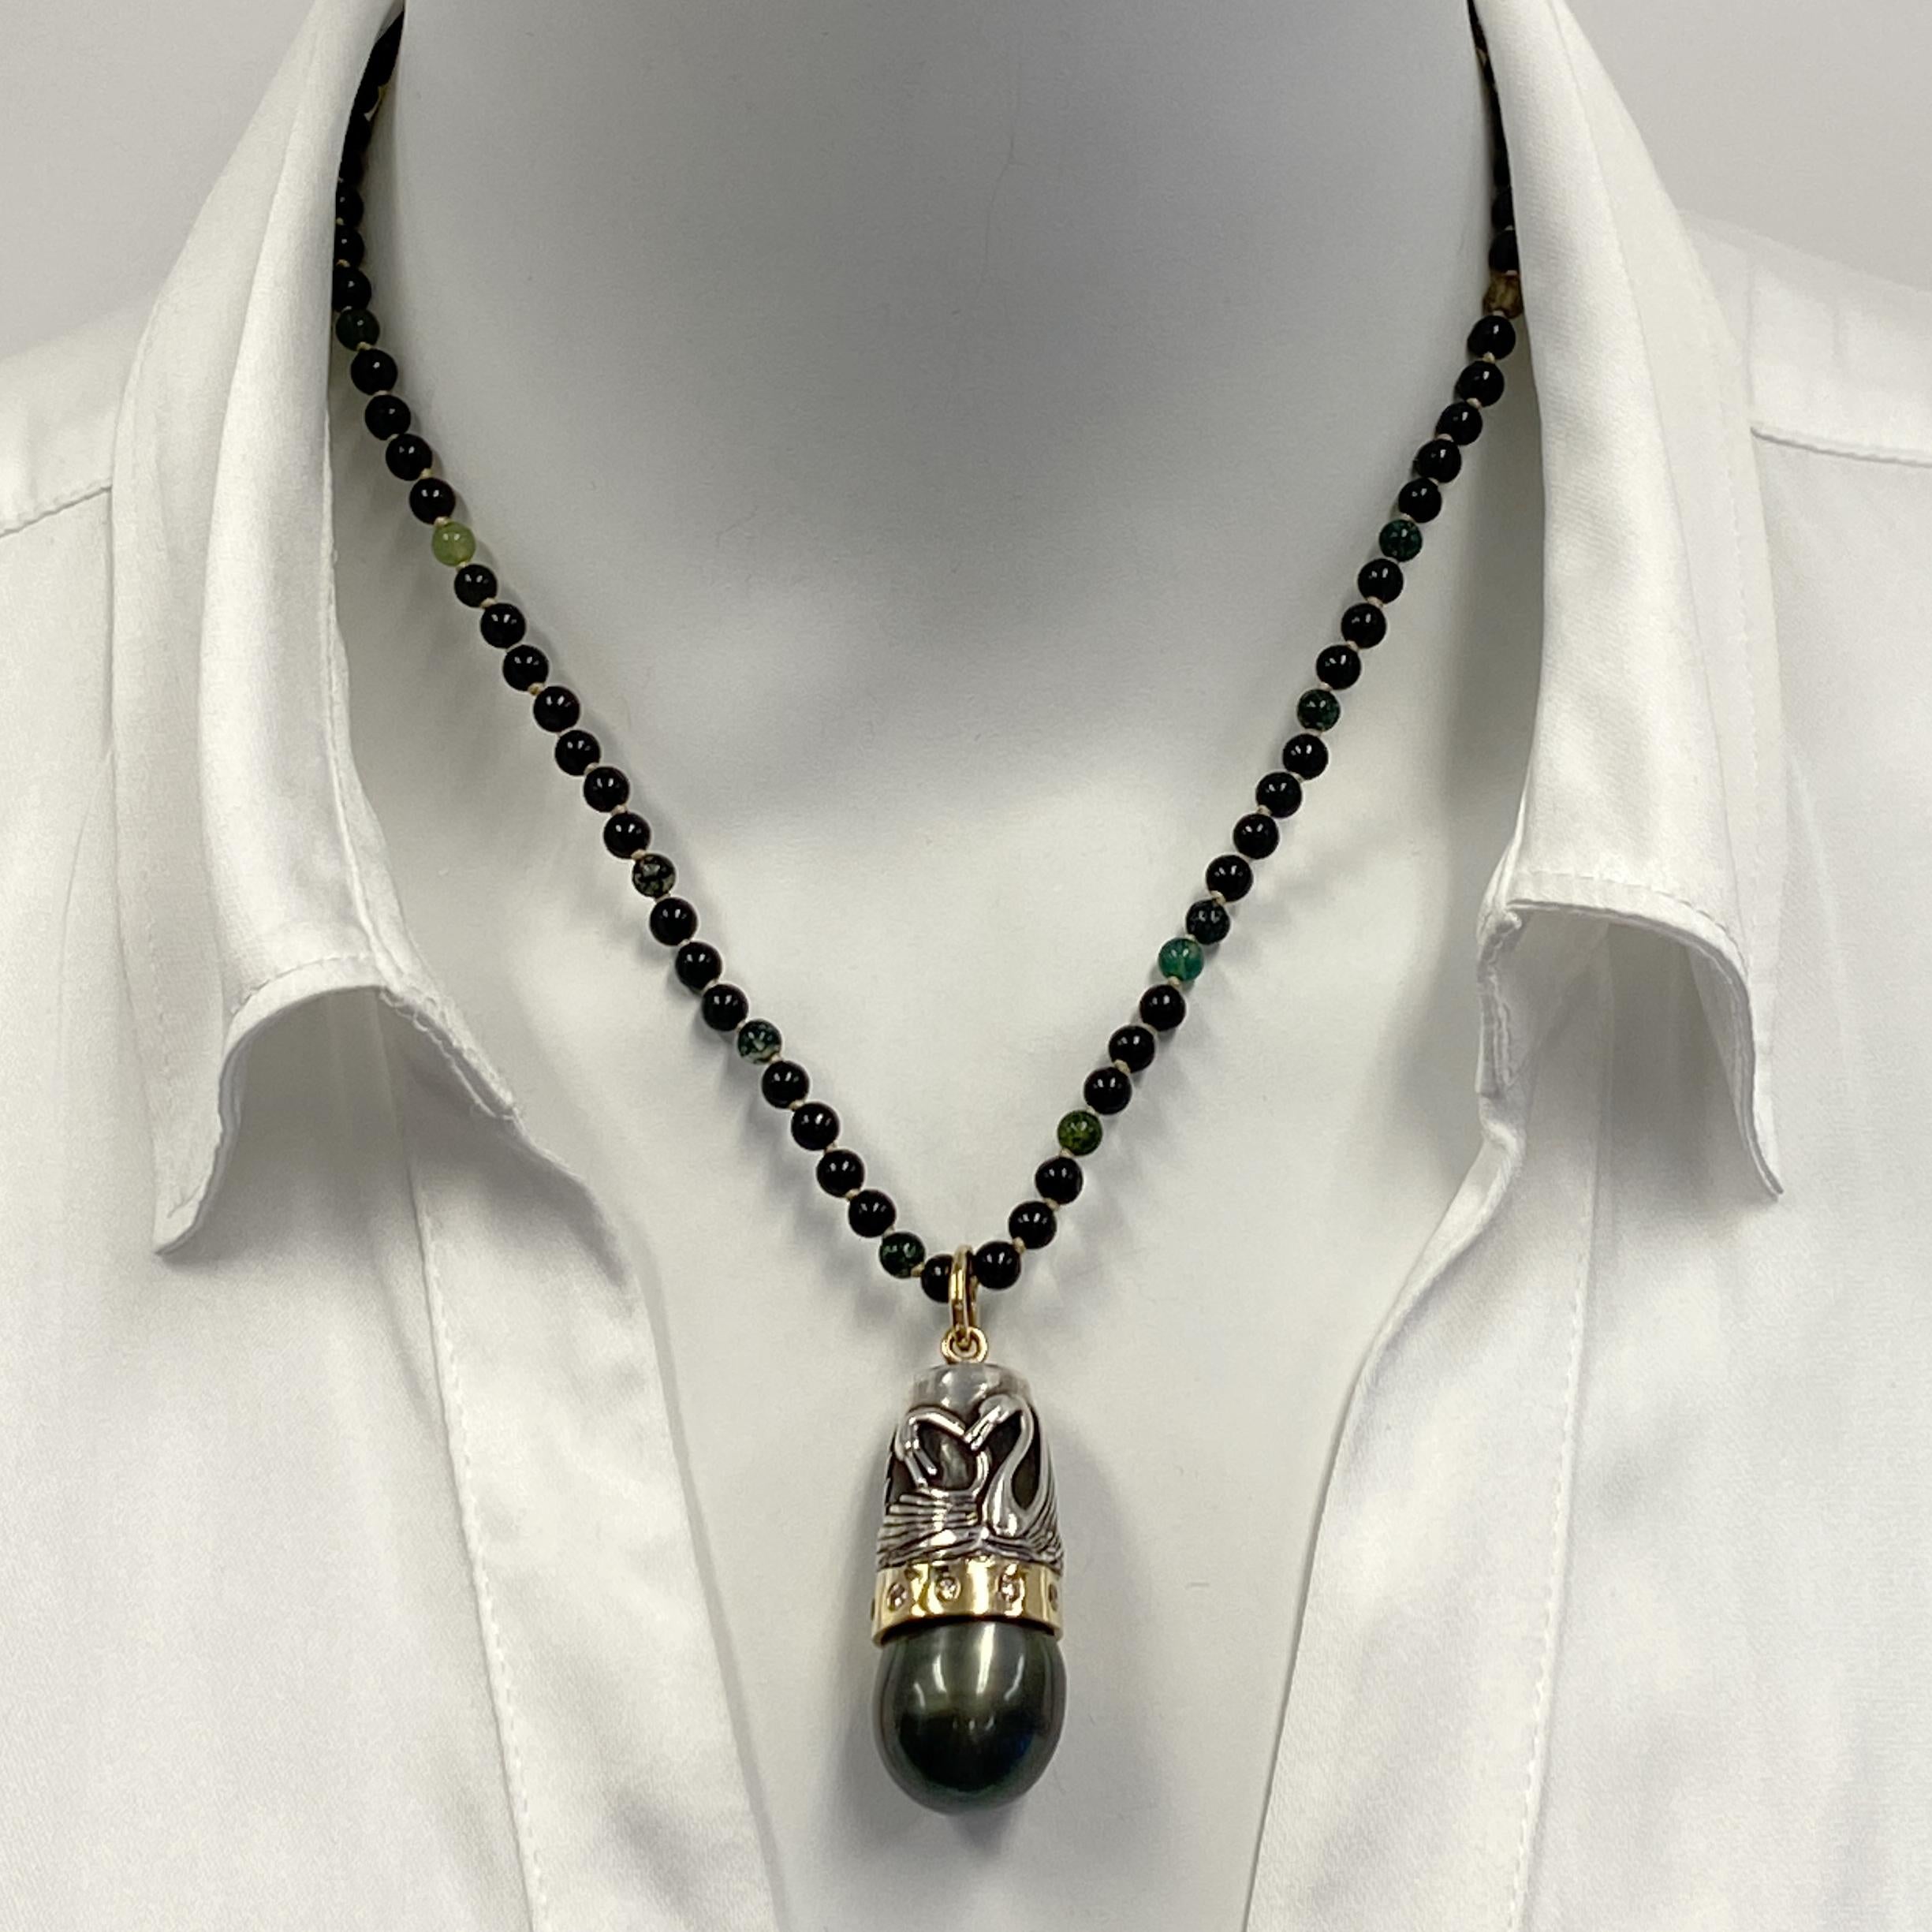 Ce pendentif unique d'Eytan Brandes présente une énorme perle noire de Tahiti sertie dans une lunette en or jaune 18 carats brunie par des diamants brun pâle.  La lunette est surmontée d'un dé à coudre vintage en argent sterling représentant deux